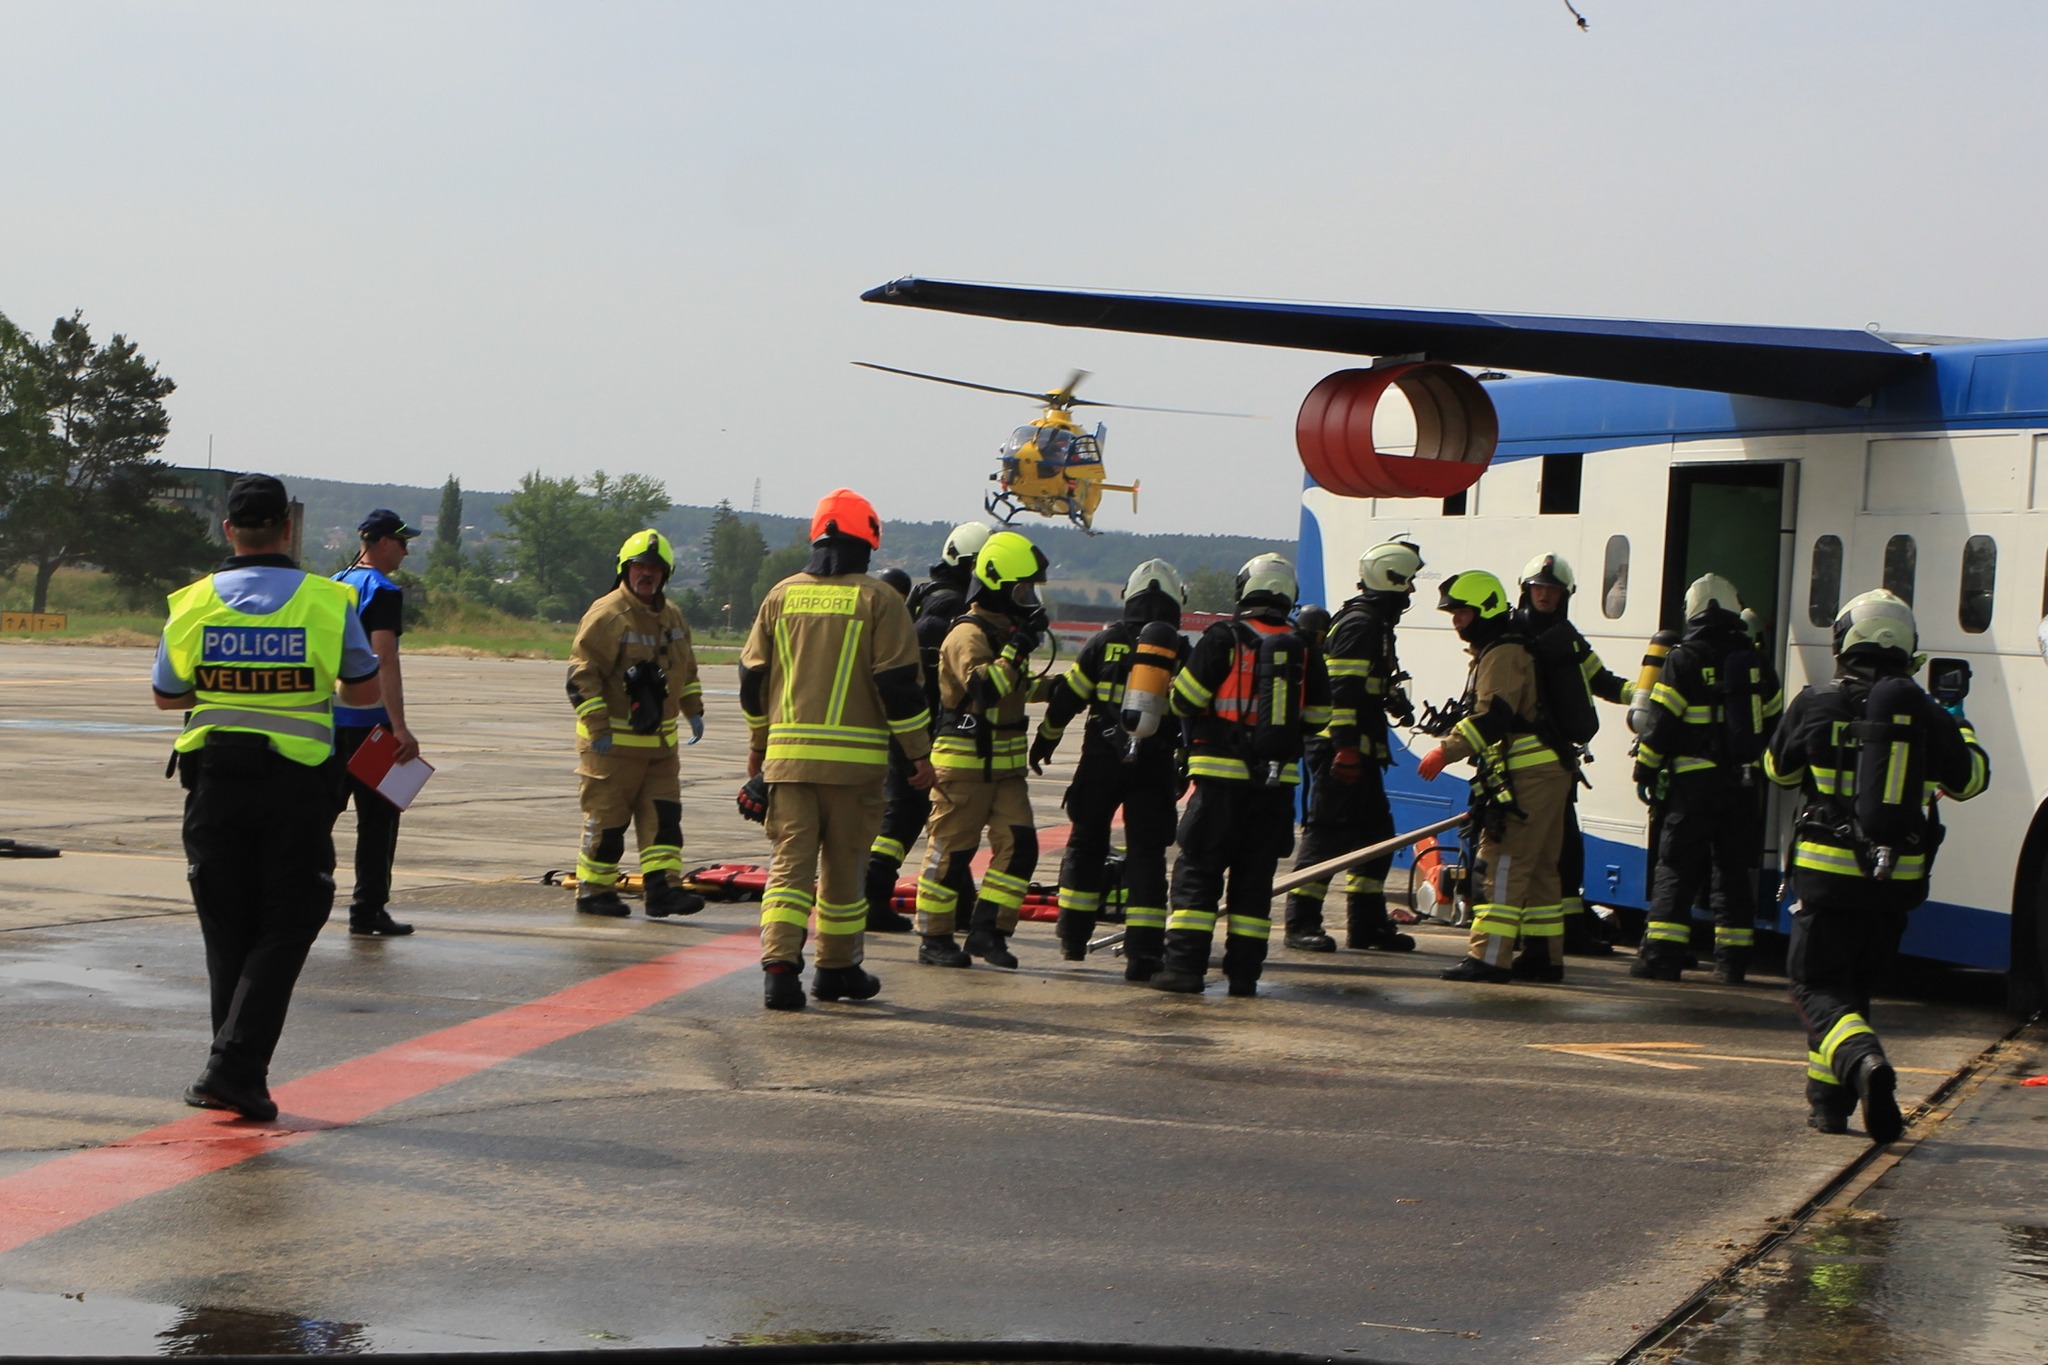 2_Letištní hasiči zahajují vyprošťovací a záchranné akce. V pozadí přistává vrtulník LZS..jpg (527 KB)